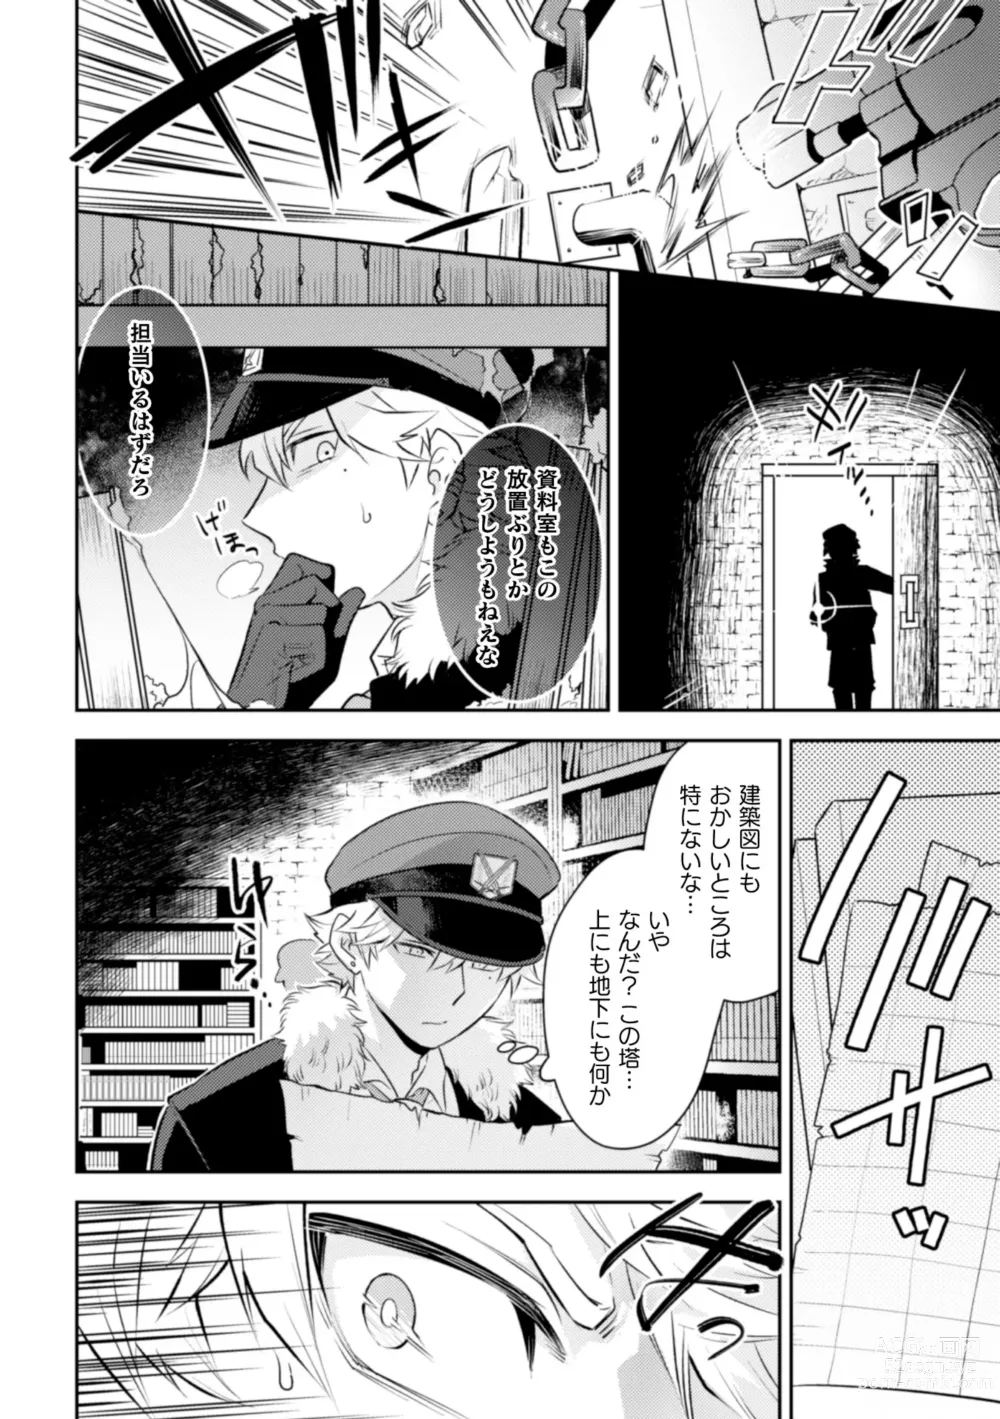 Page 6 of manga Zekkai Rougoku Do S Kanshu o Shokushu Choubatsu